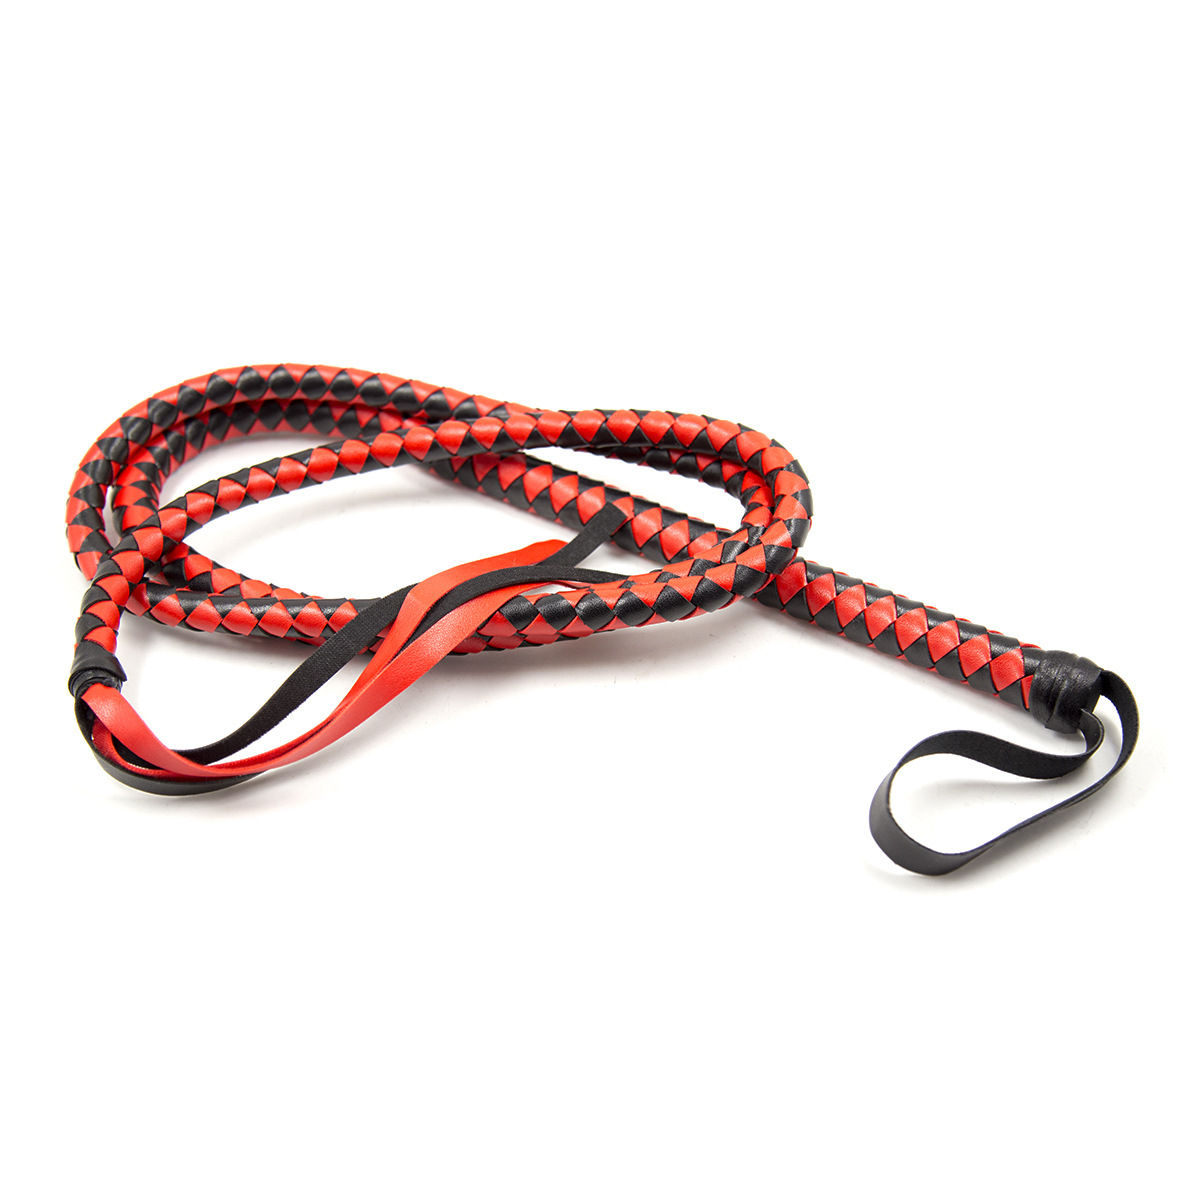 292402023-190cm riding whip plus long snake whip flirting whip alternative toy pointer SPM